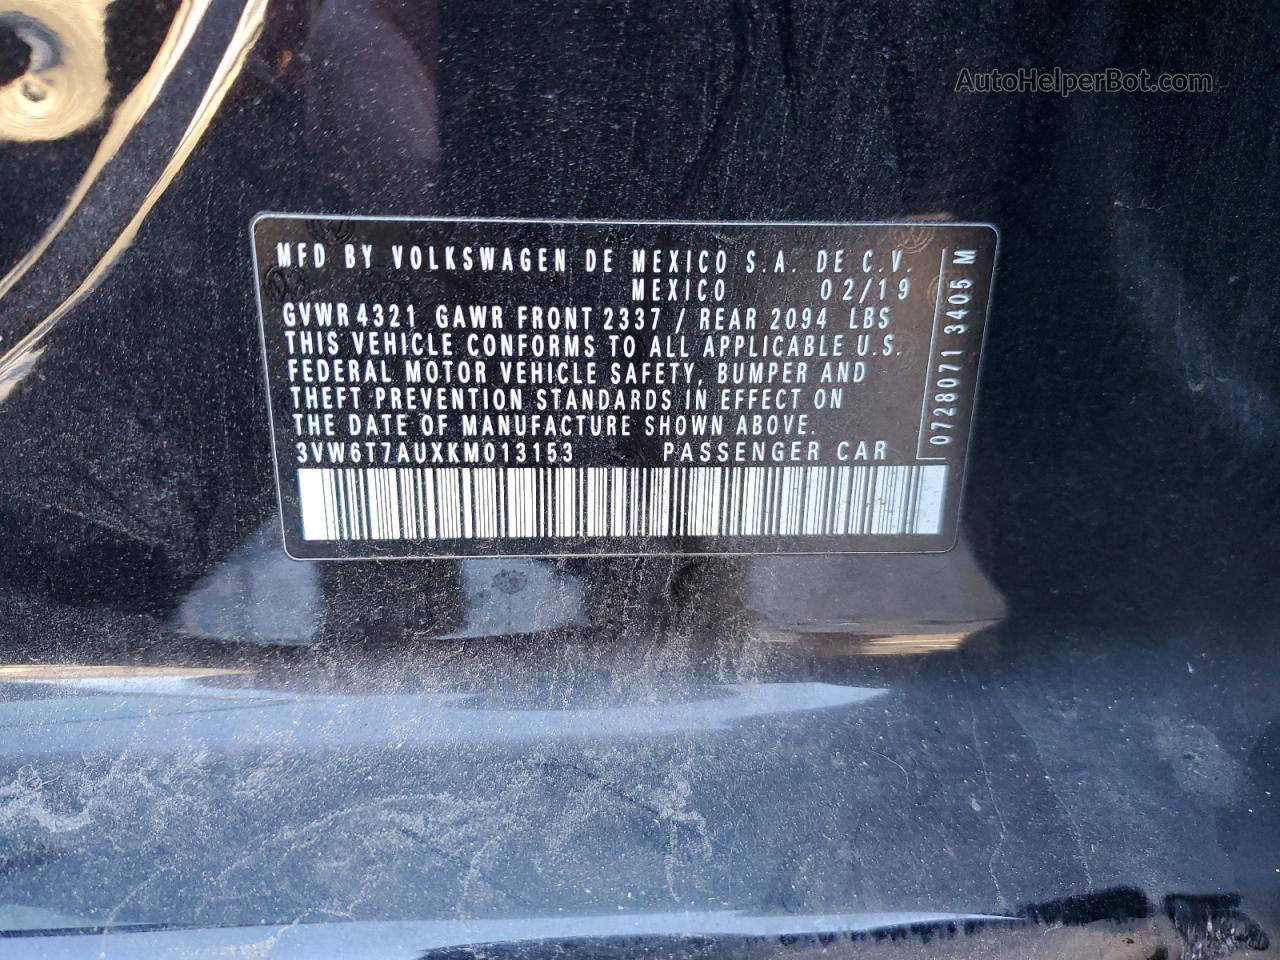 2019 Volkswagen Gti S Black vin: 3VW6T7AUXKM013153